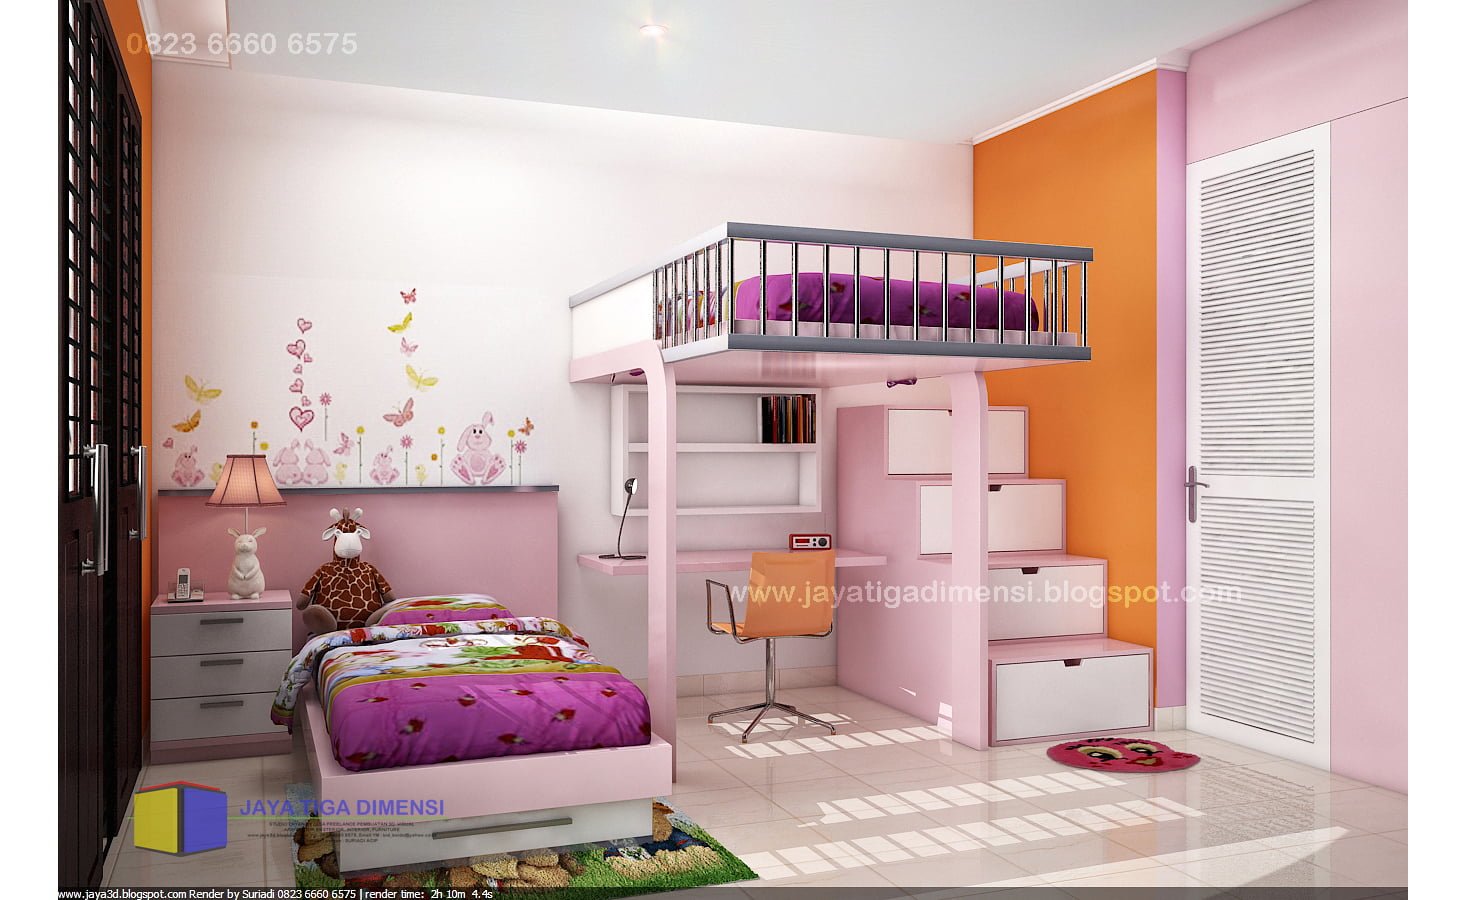 77 Gambar Desain Kamar Tidur Anak Rumah Minimalis Paling Populer di Dunia